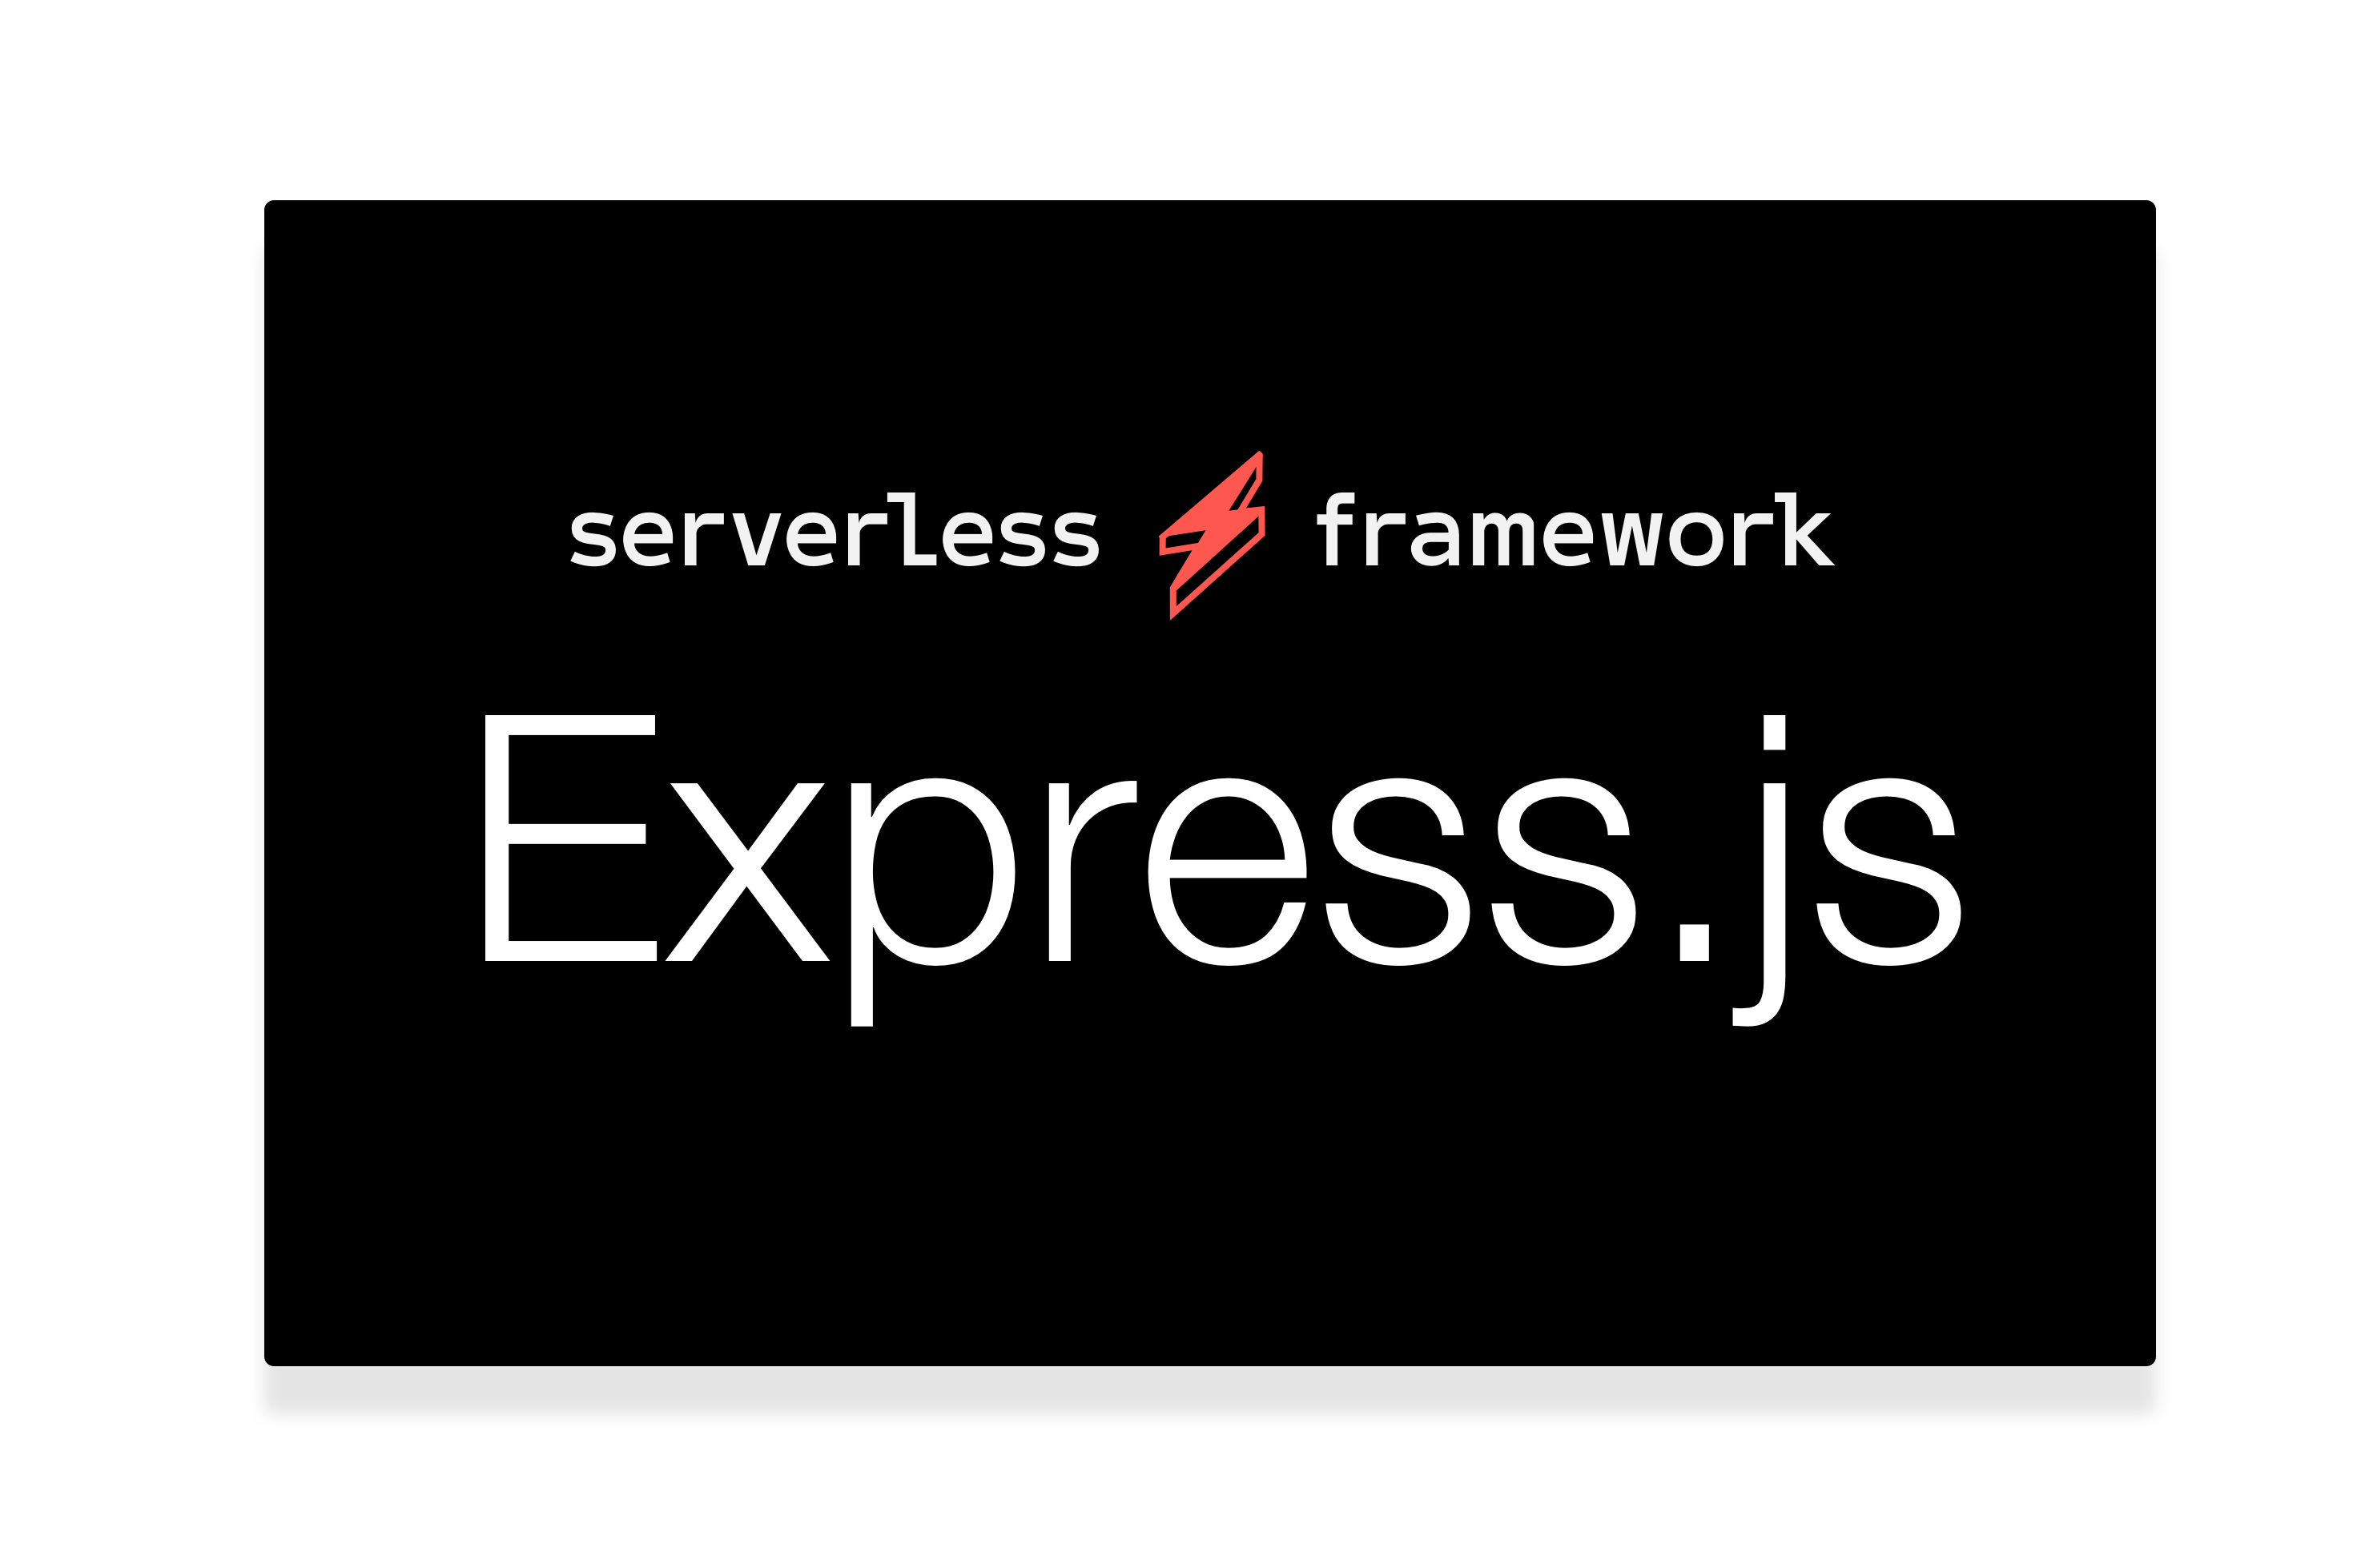 serverless framework express.js